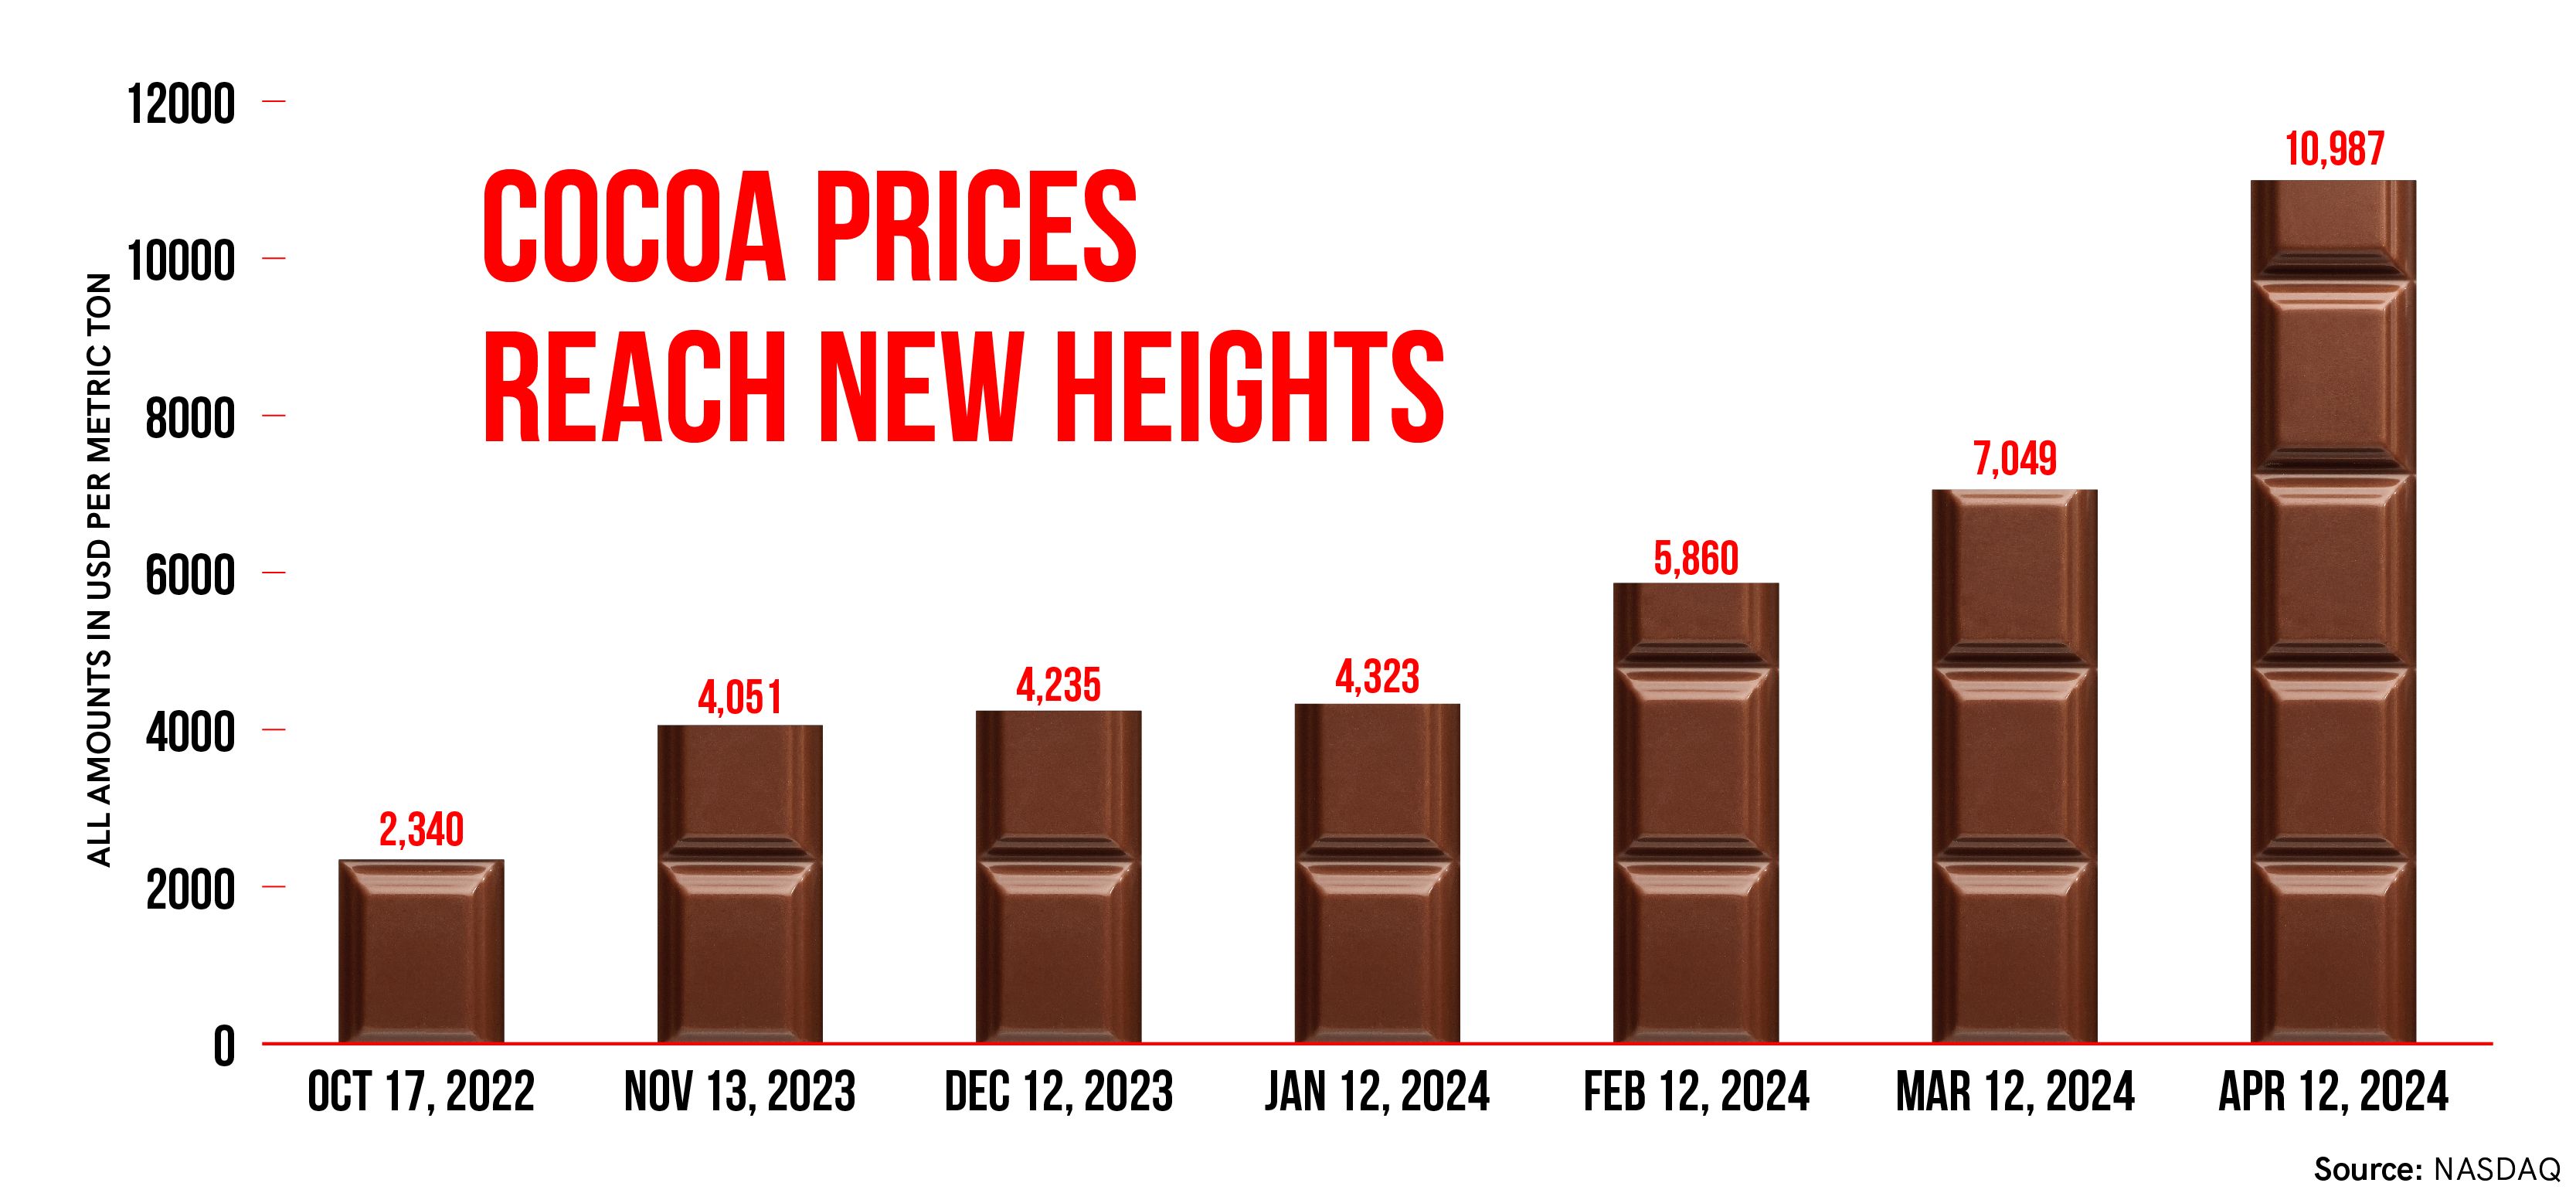 Cocoa Prices